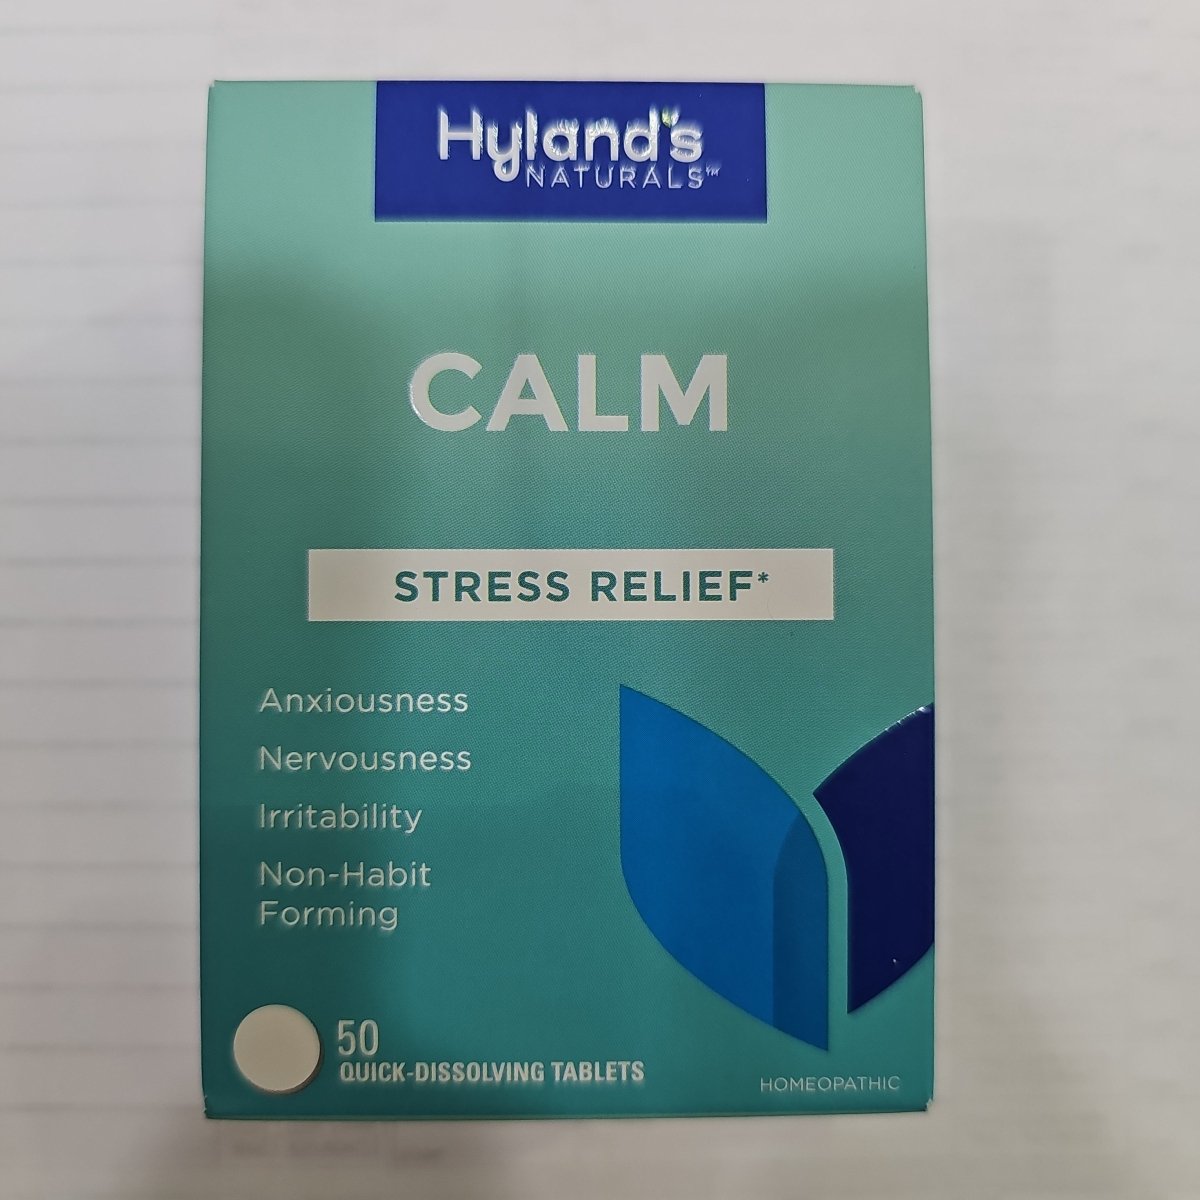 Calm 50 Tabletas, Suplemento para la Ansiedad y Estrés - Hyland's